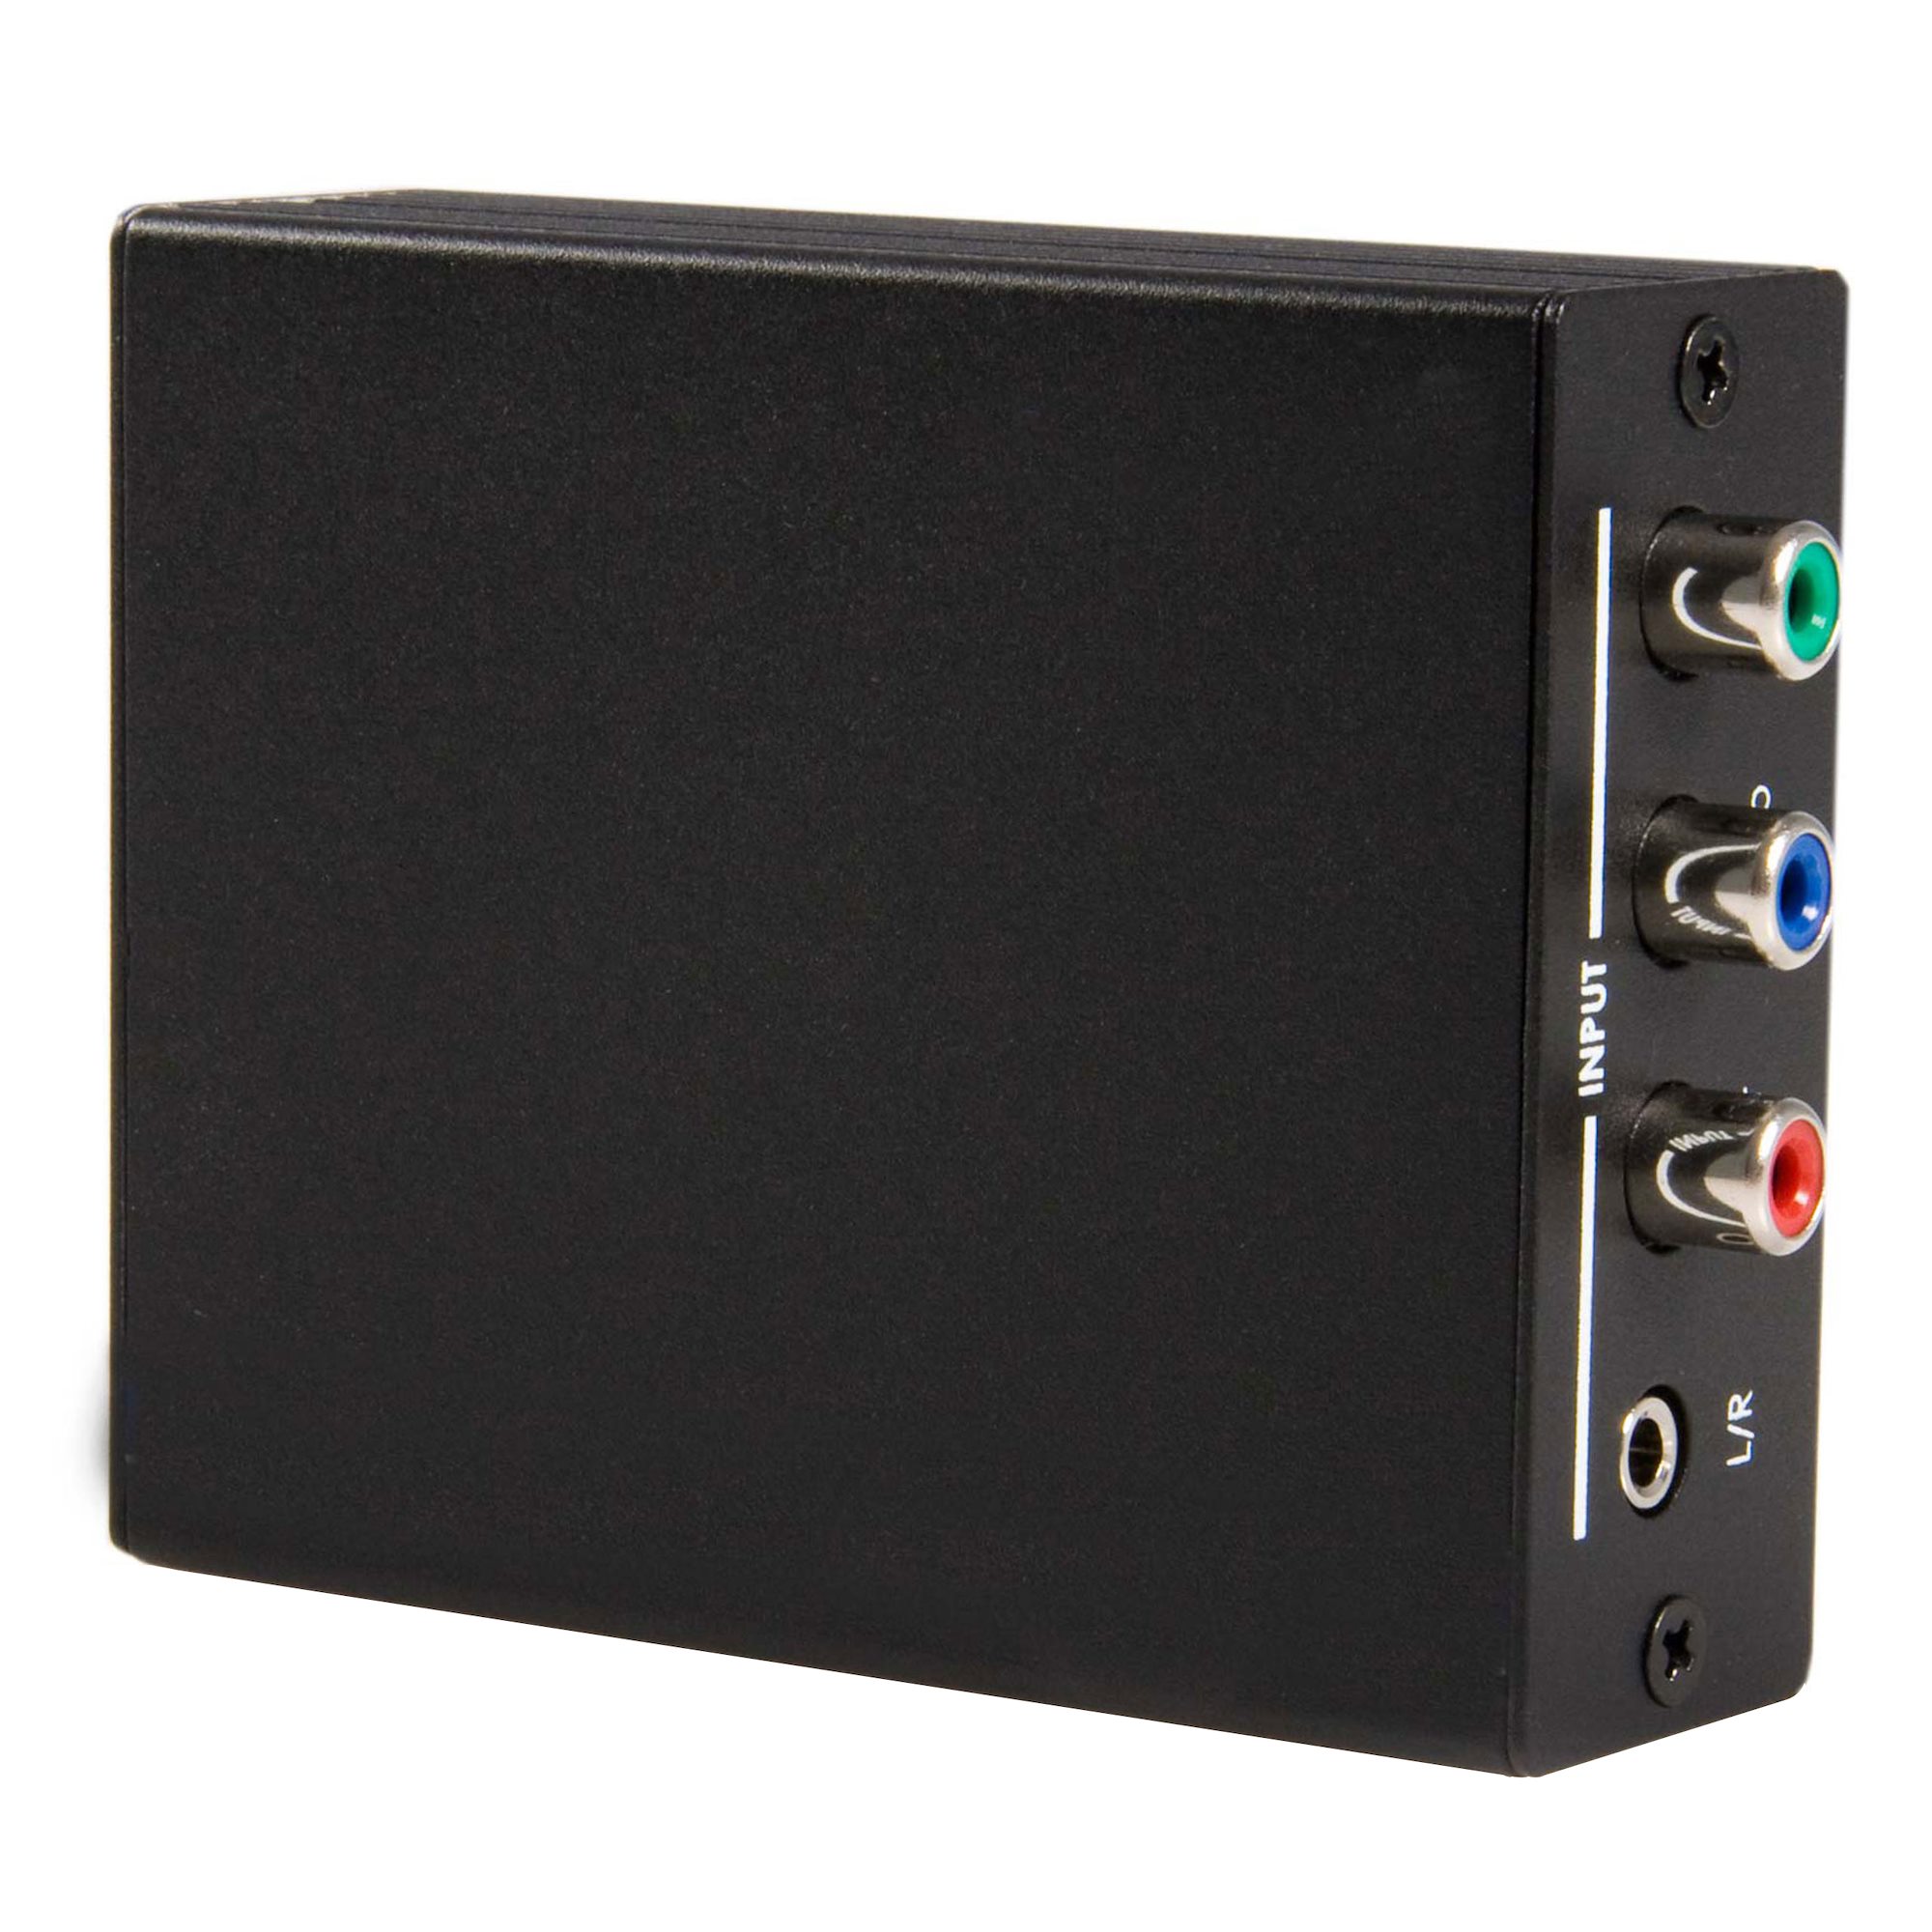 コンポーネント - HDMI コンバータ アナログ/デジタルオーディオ入力対応